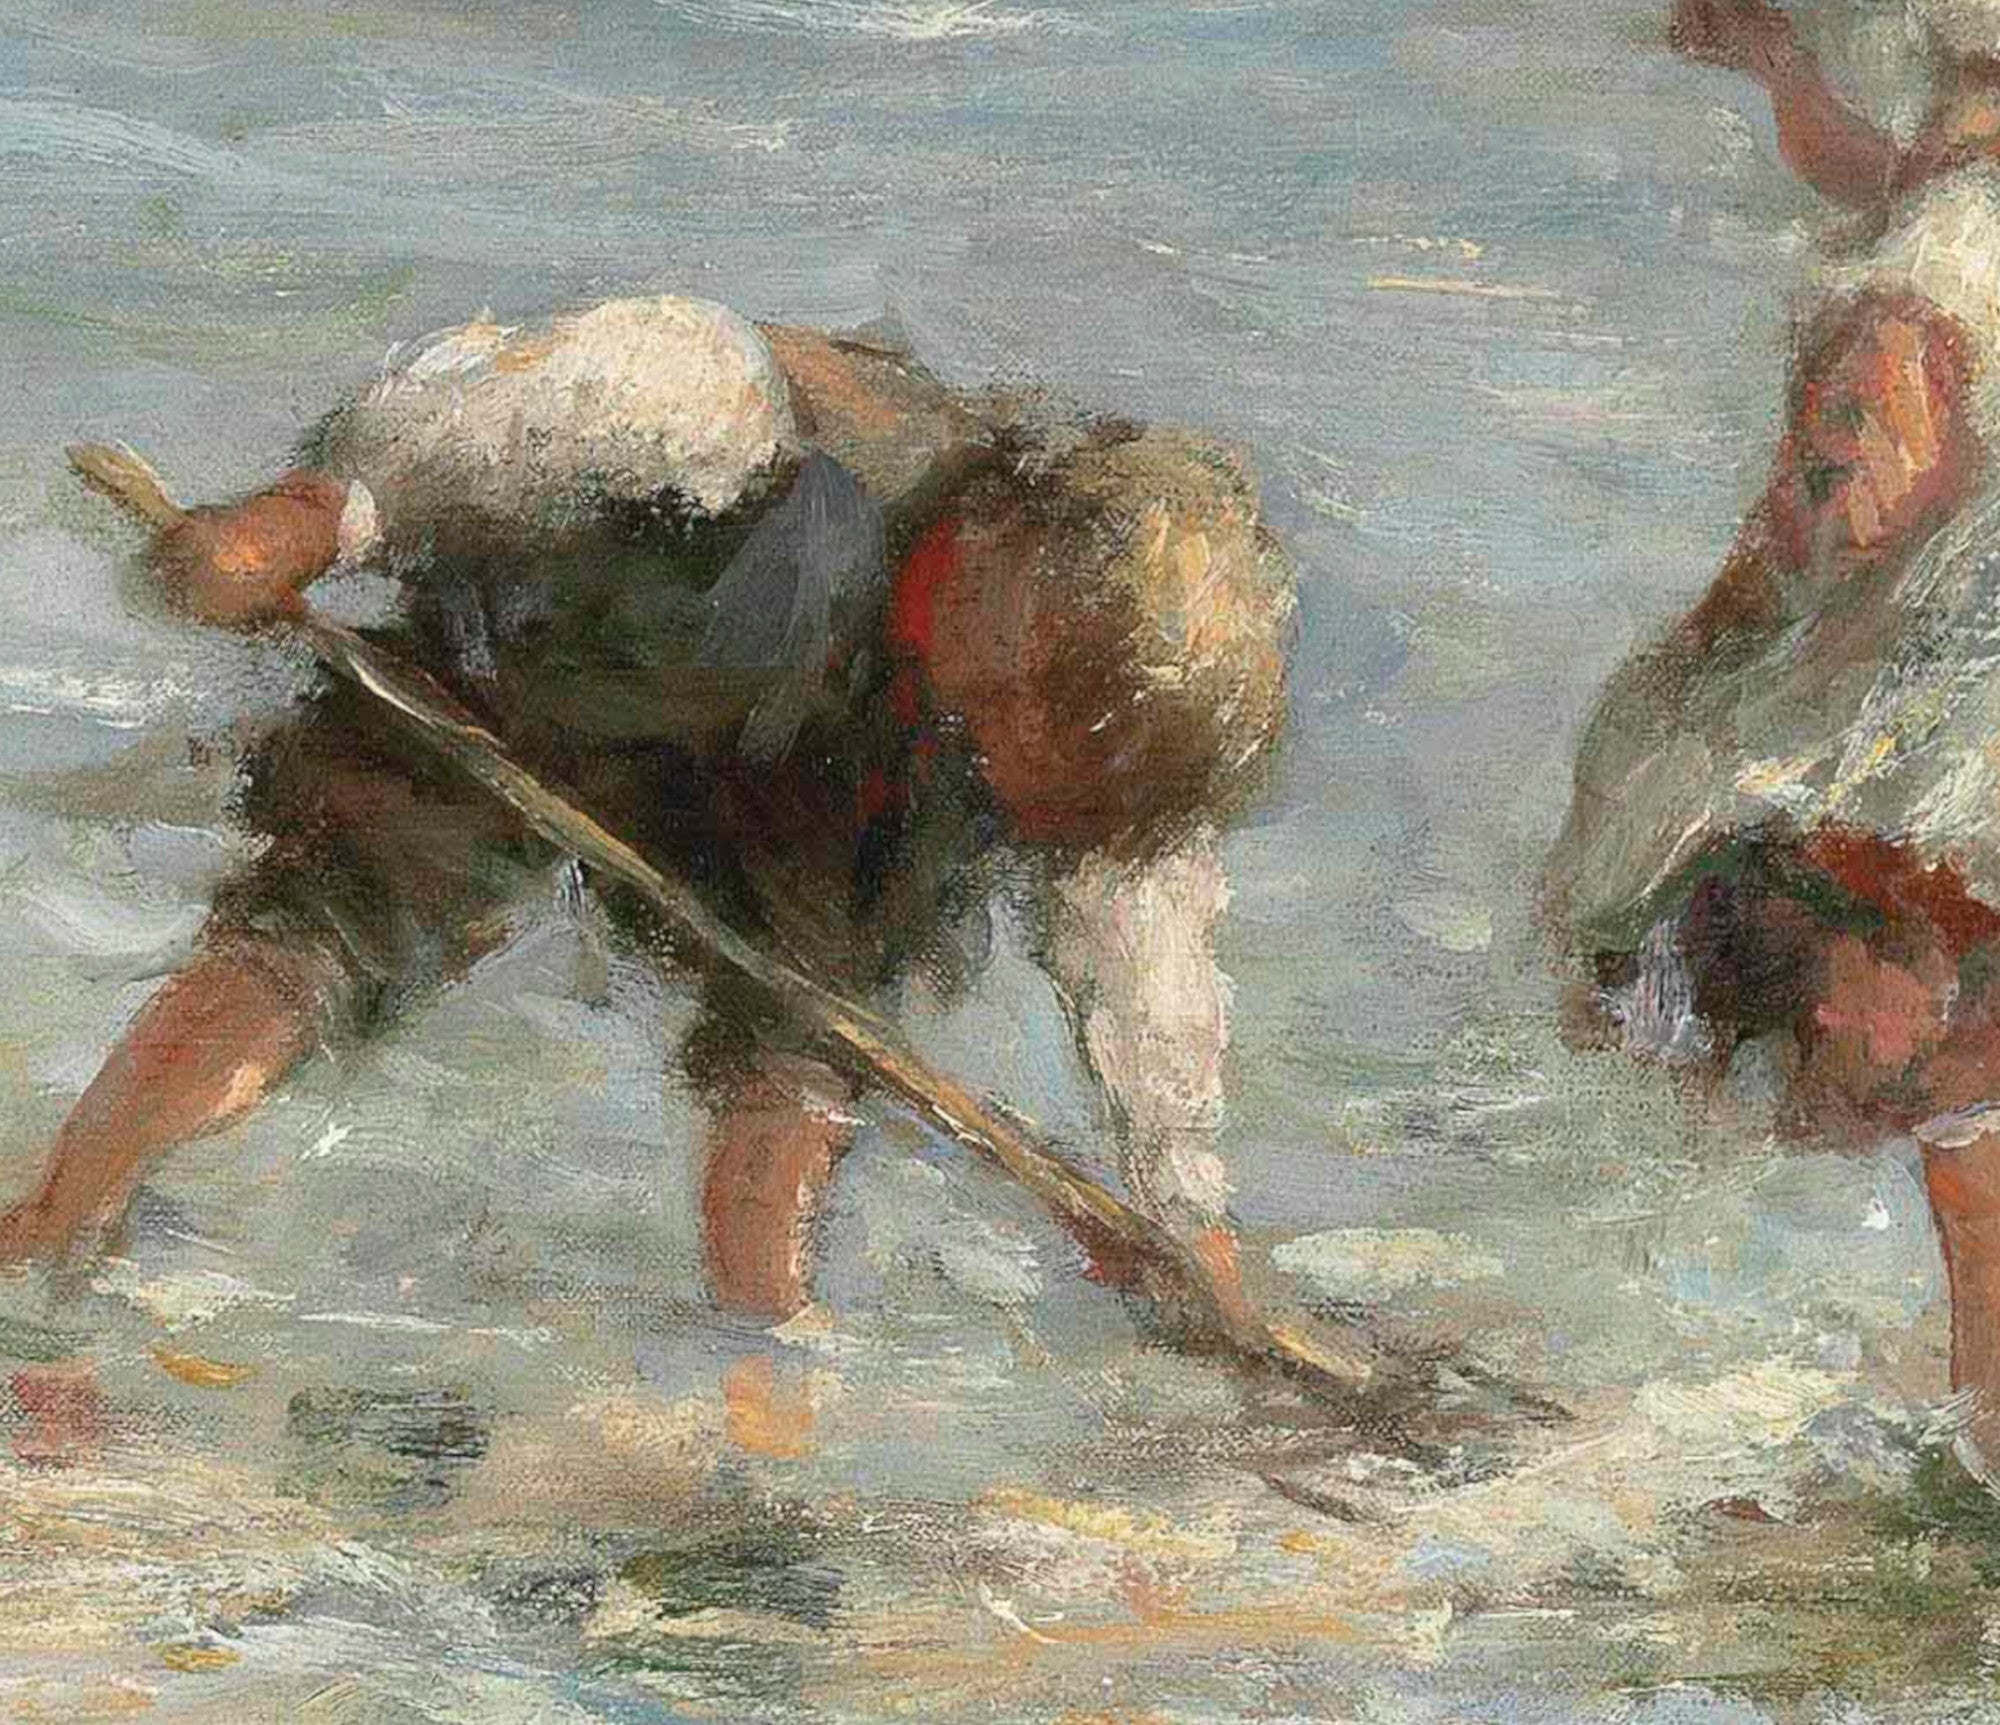 Robert Gemmell Hutchison Fine Art Print, Children at the water's edge